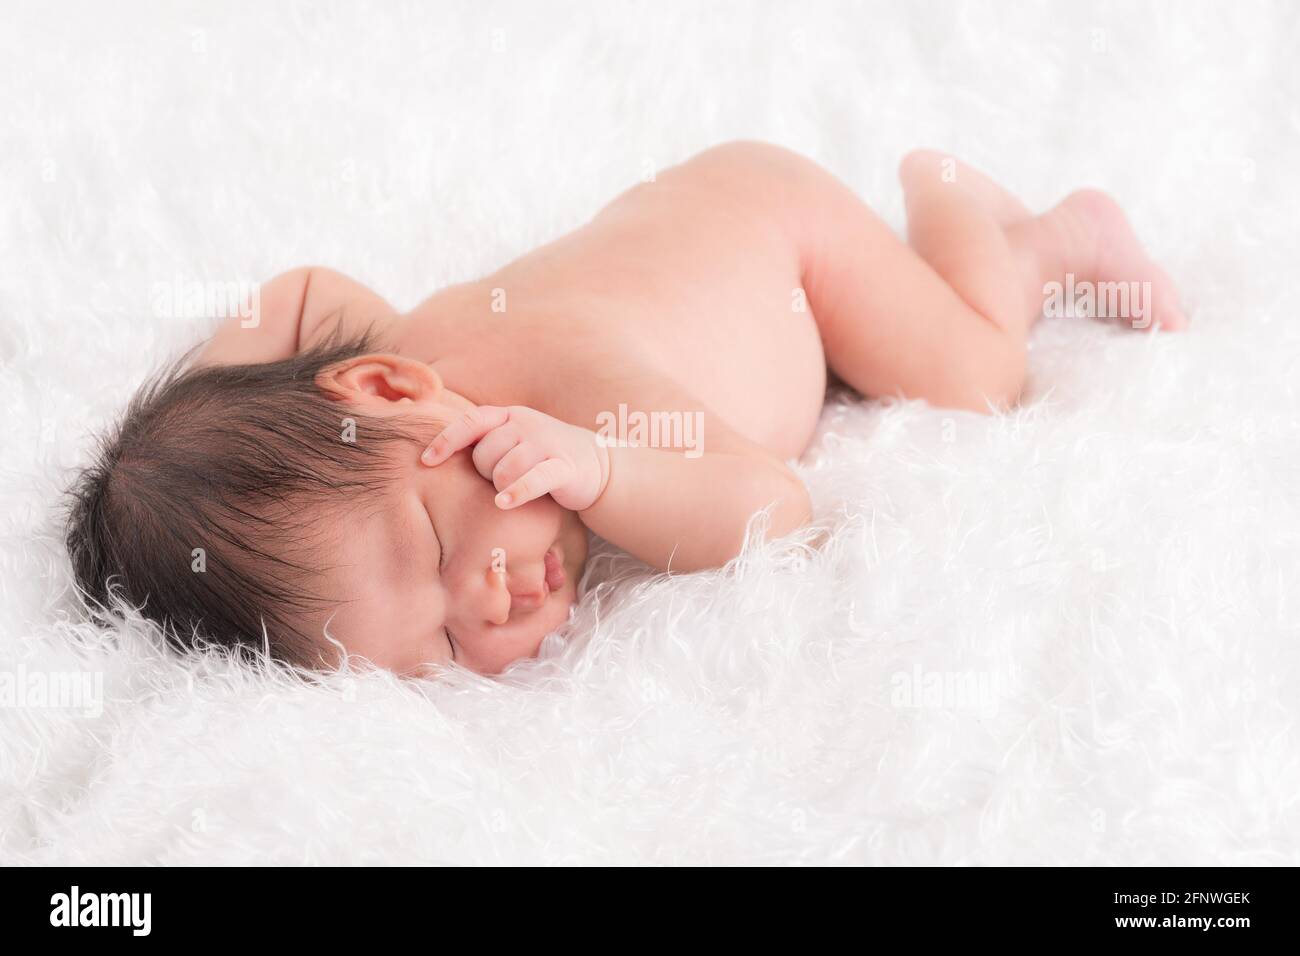 Nette neugeborene Baby Junge schlafen Gesicht nach unten auf einem weichen weißen flauschigen Tuch. Stockfoto